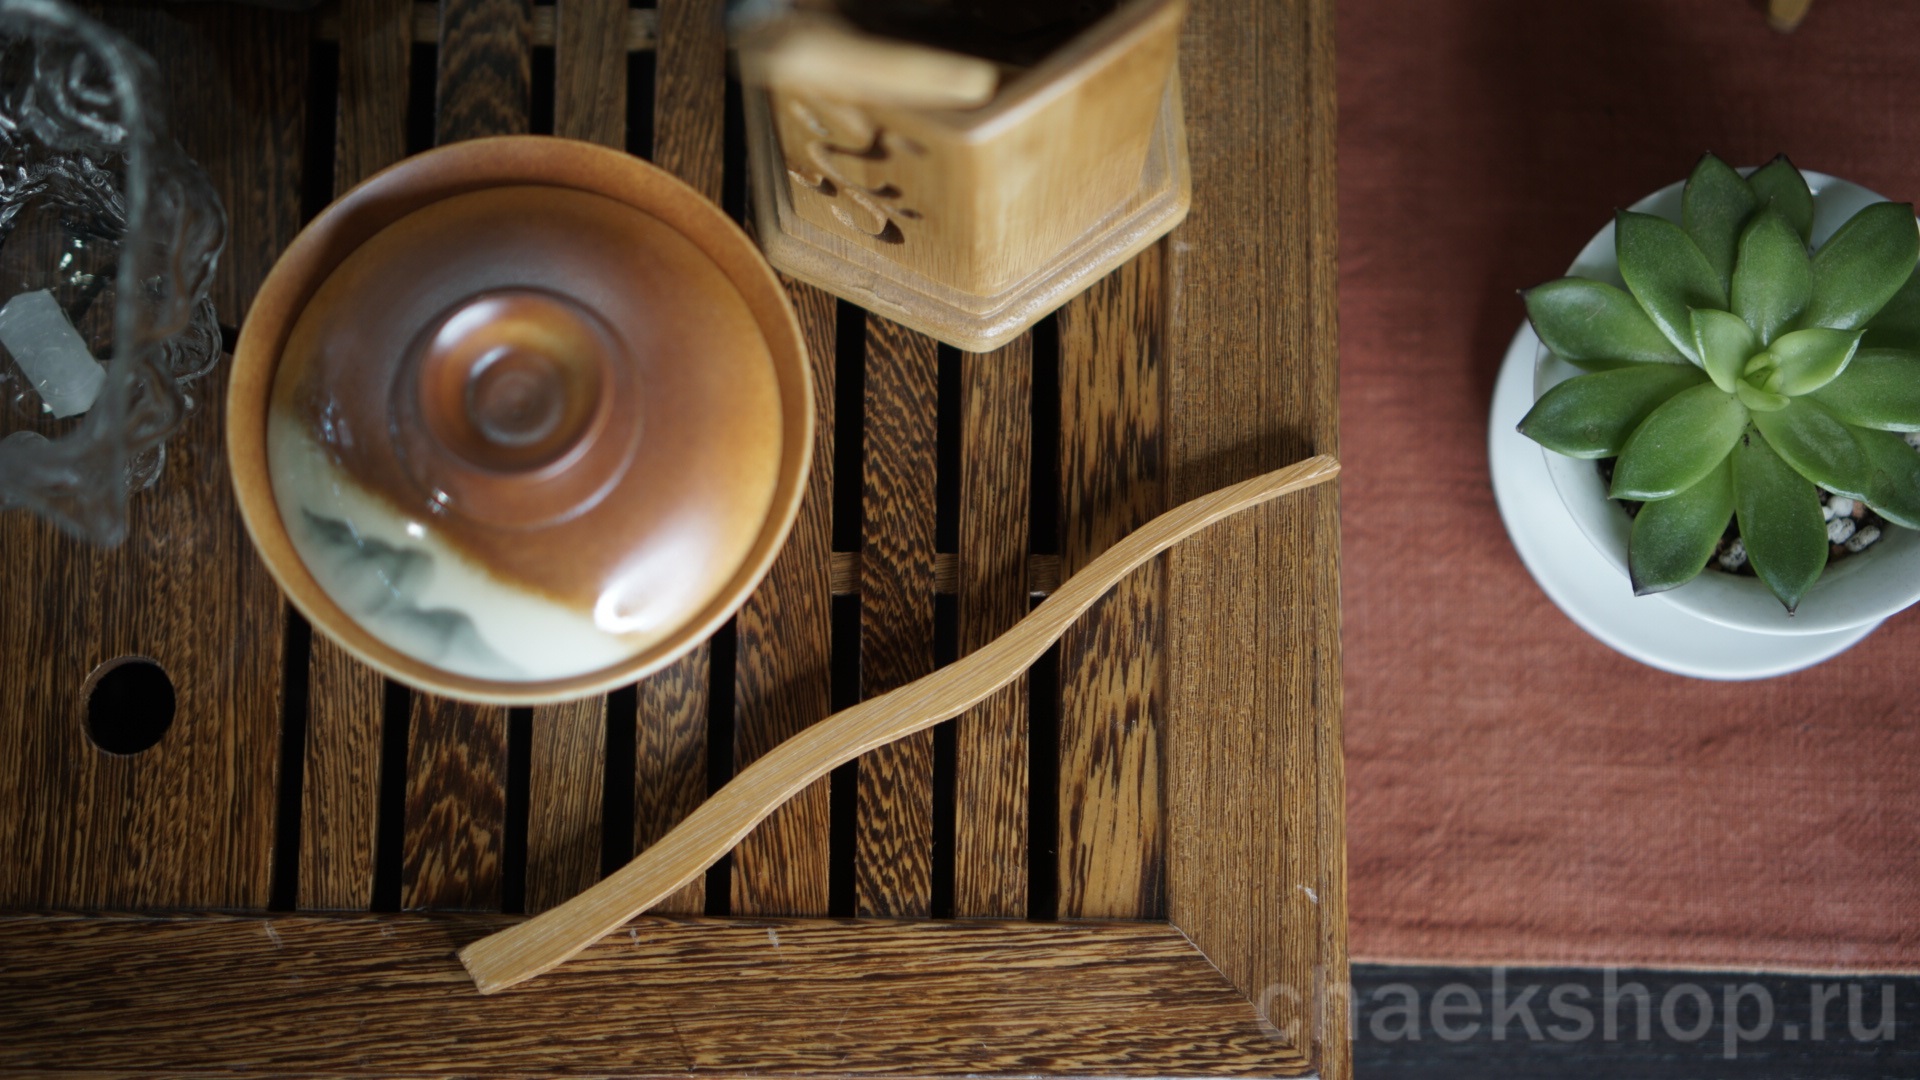   Ложечка (чачи 茶匙 cháchí) - традиционно используется при пересыпании чая из чахэ в разогретую посуду